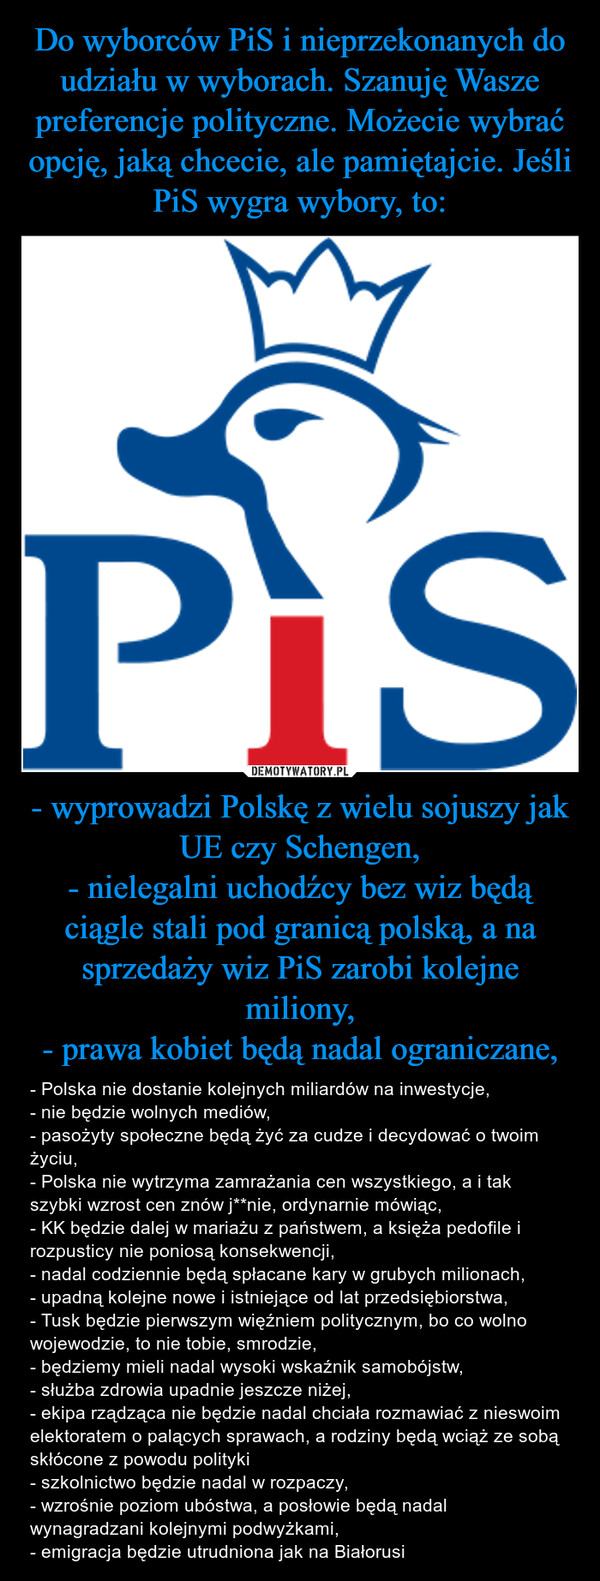 Do wyborców PiS i nieprzekonanych do udziału w wyborach. Szanuję Wasze preferencje polityczne. Możecie wybrać opcję, jaką chcecie, ale pamiętajcie. Jeśli PiS wygra wybory, to: - wyprowadzi Polskę z wielu sojuszy jak UE czy Schengen,
- nielegalni uchodźcy bez wiz będą ciągle stali pod granicą polską, a na sprzedaży wiz PiS zarobi kolejne miliony,
- prawa kobiet będą nadal ograniczane,